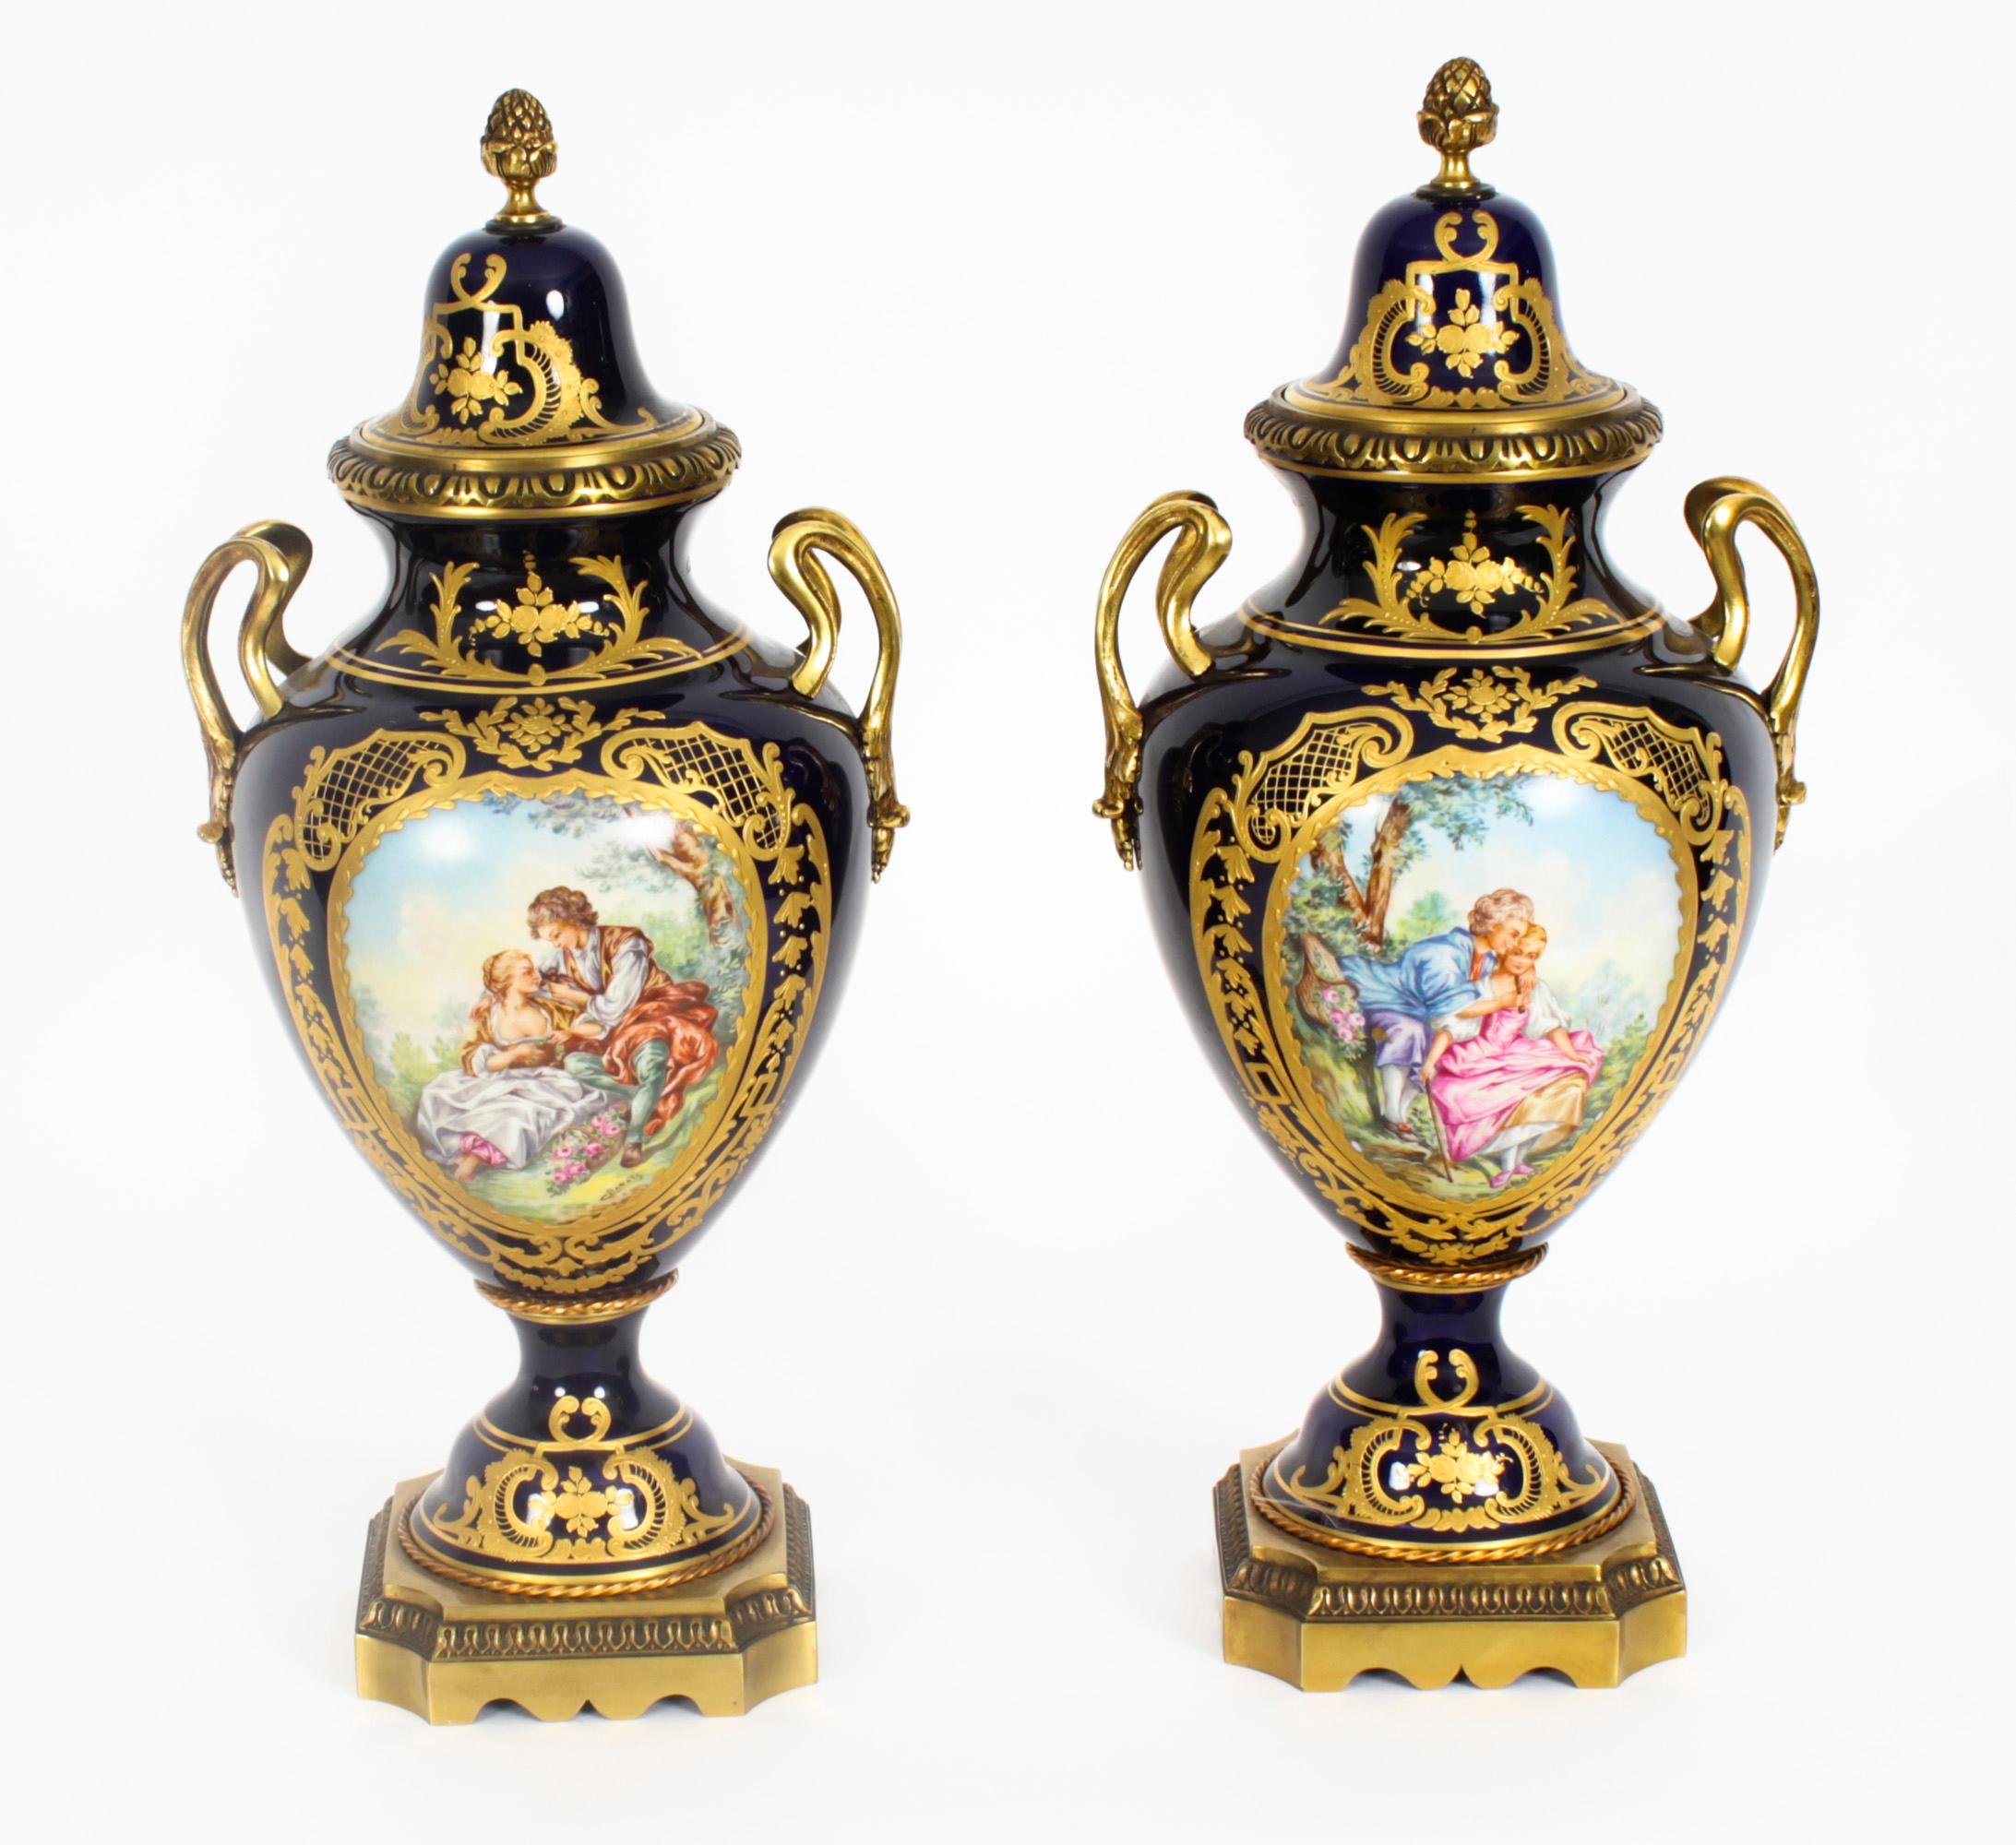 Eine schöne und monumentale Pariser Porzellan Ormolu montiert dreiteilige Garnitur mit handgemalten Szenen und zarte vergoldete Dekoration, Circa 1900 in Datum. 
 
Das Set besteht aus einem Paar Deckelvasen und einer ovalen Schale mit zwei